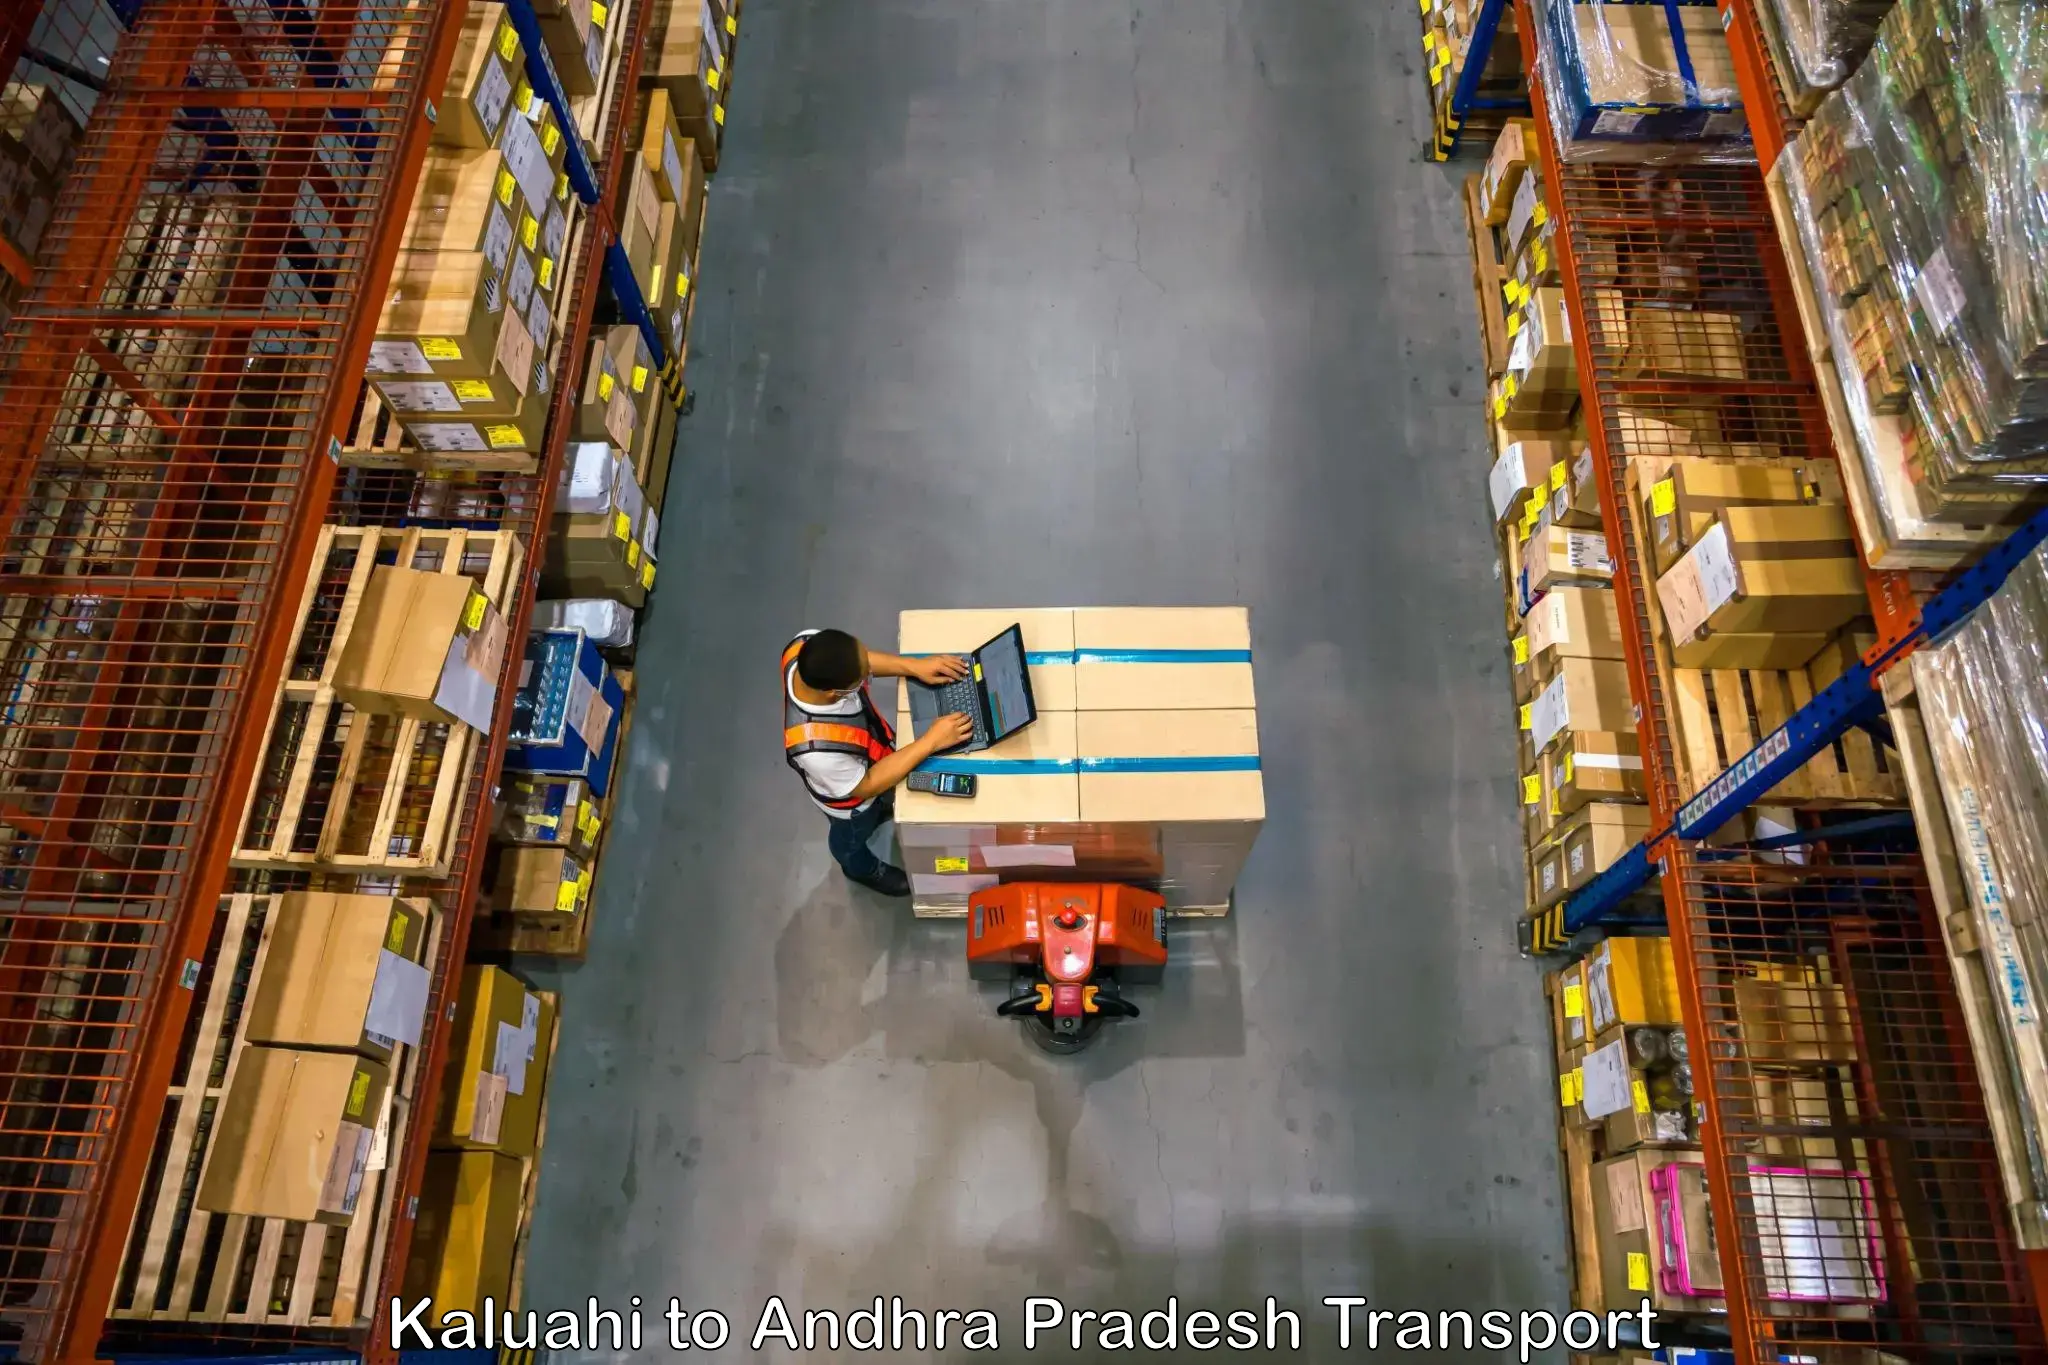 Truck transport companies in India Kaluahi to IIT Tirupati